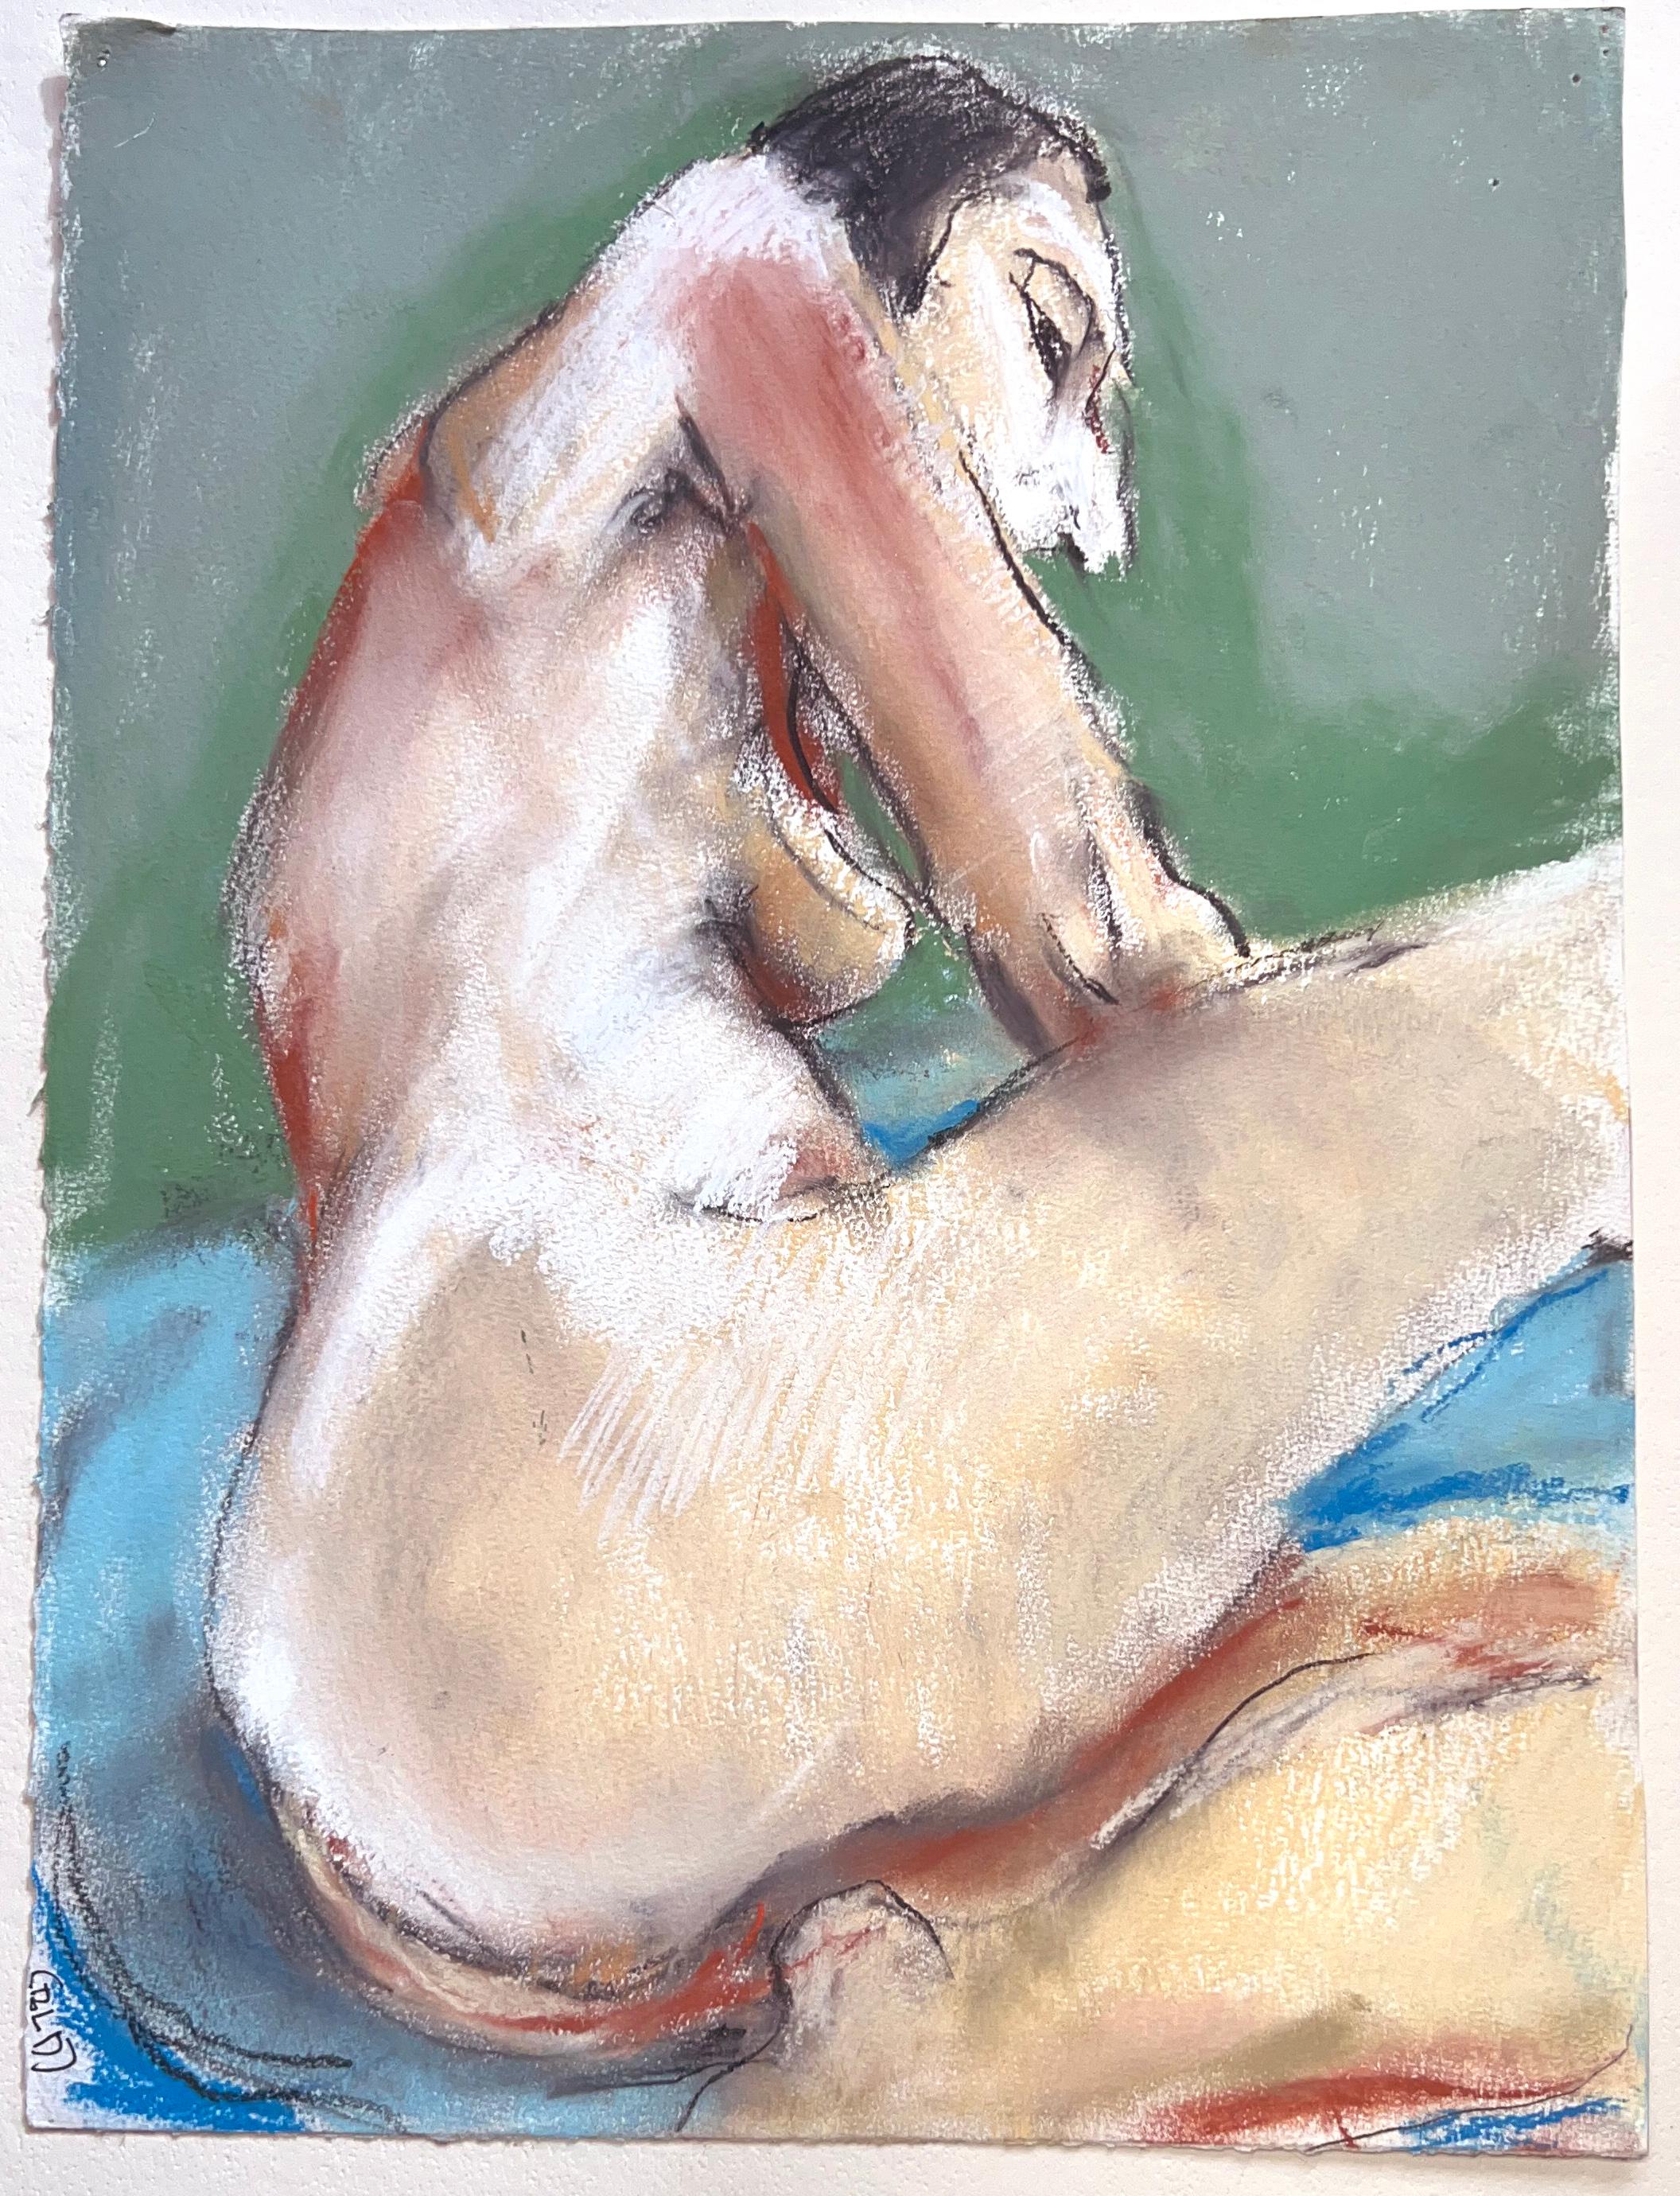 Abstrakter Expressionismus der Bay Area – Aktstudie einer Frau – Painting von Unknown